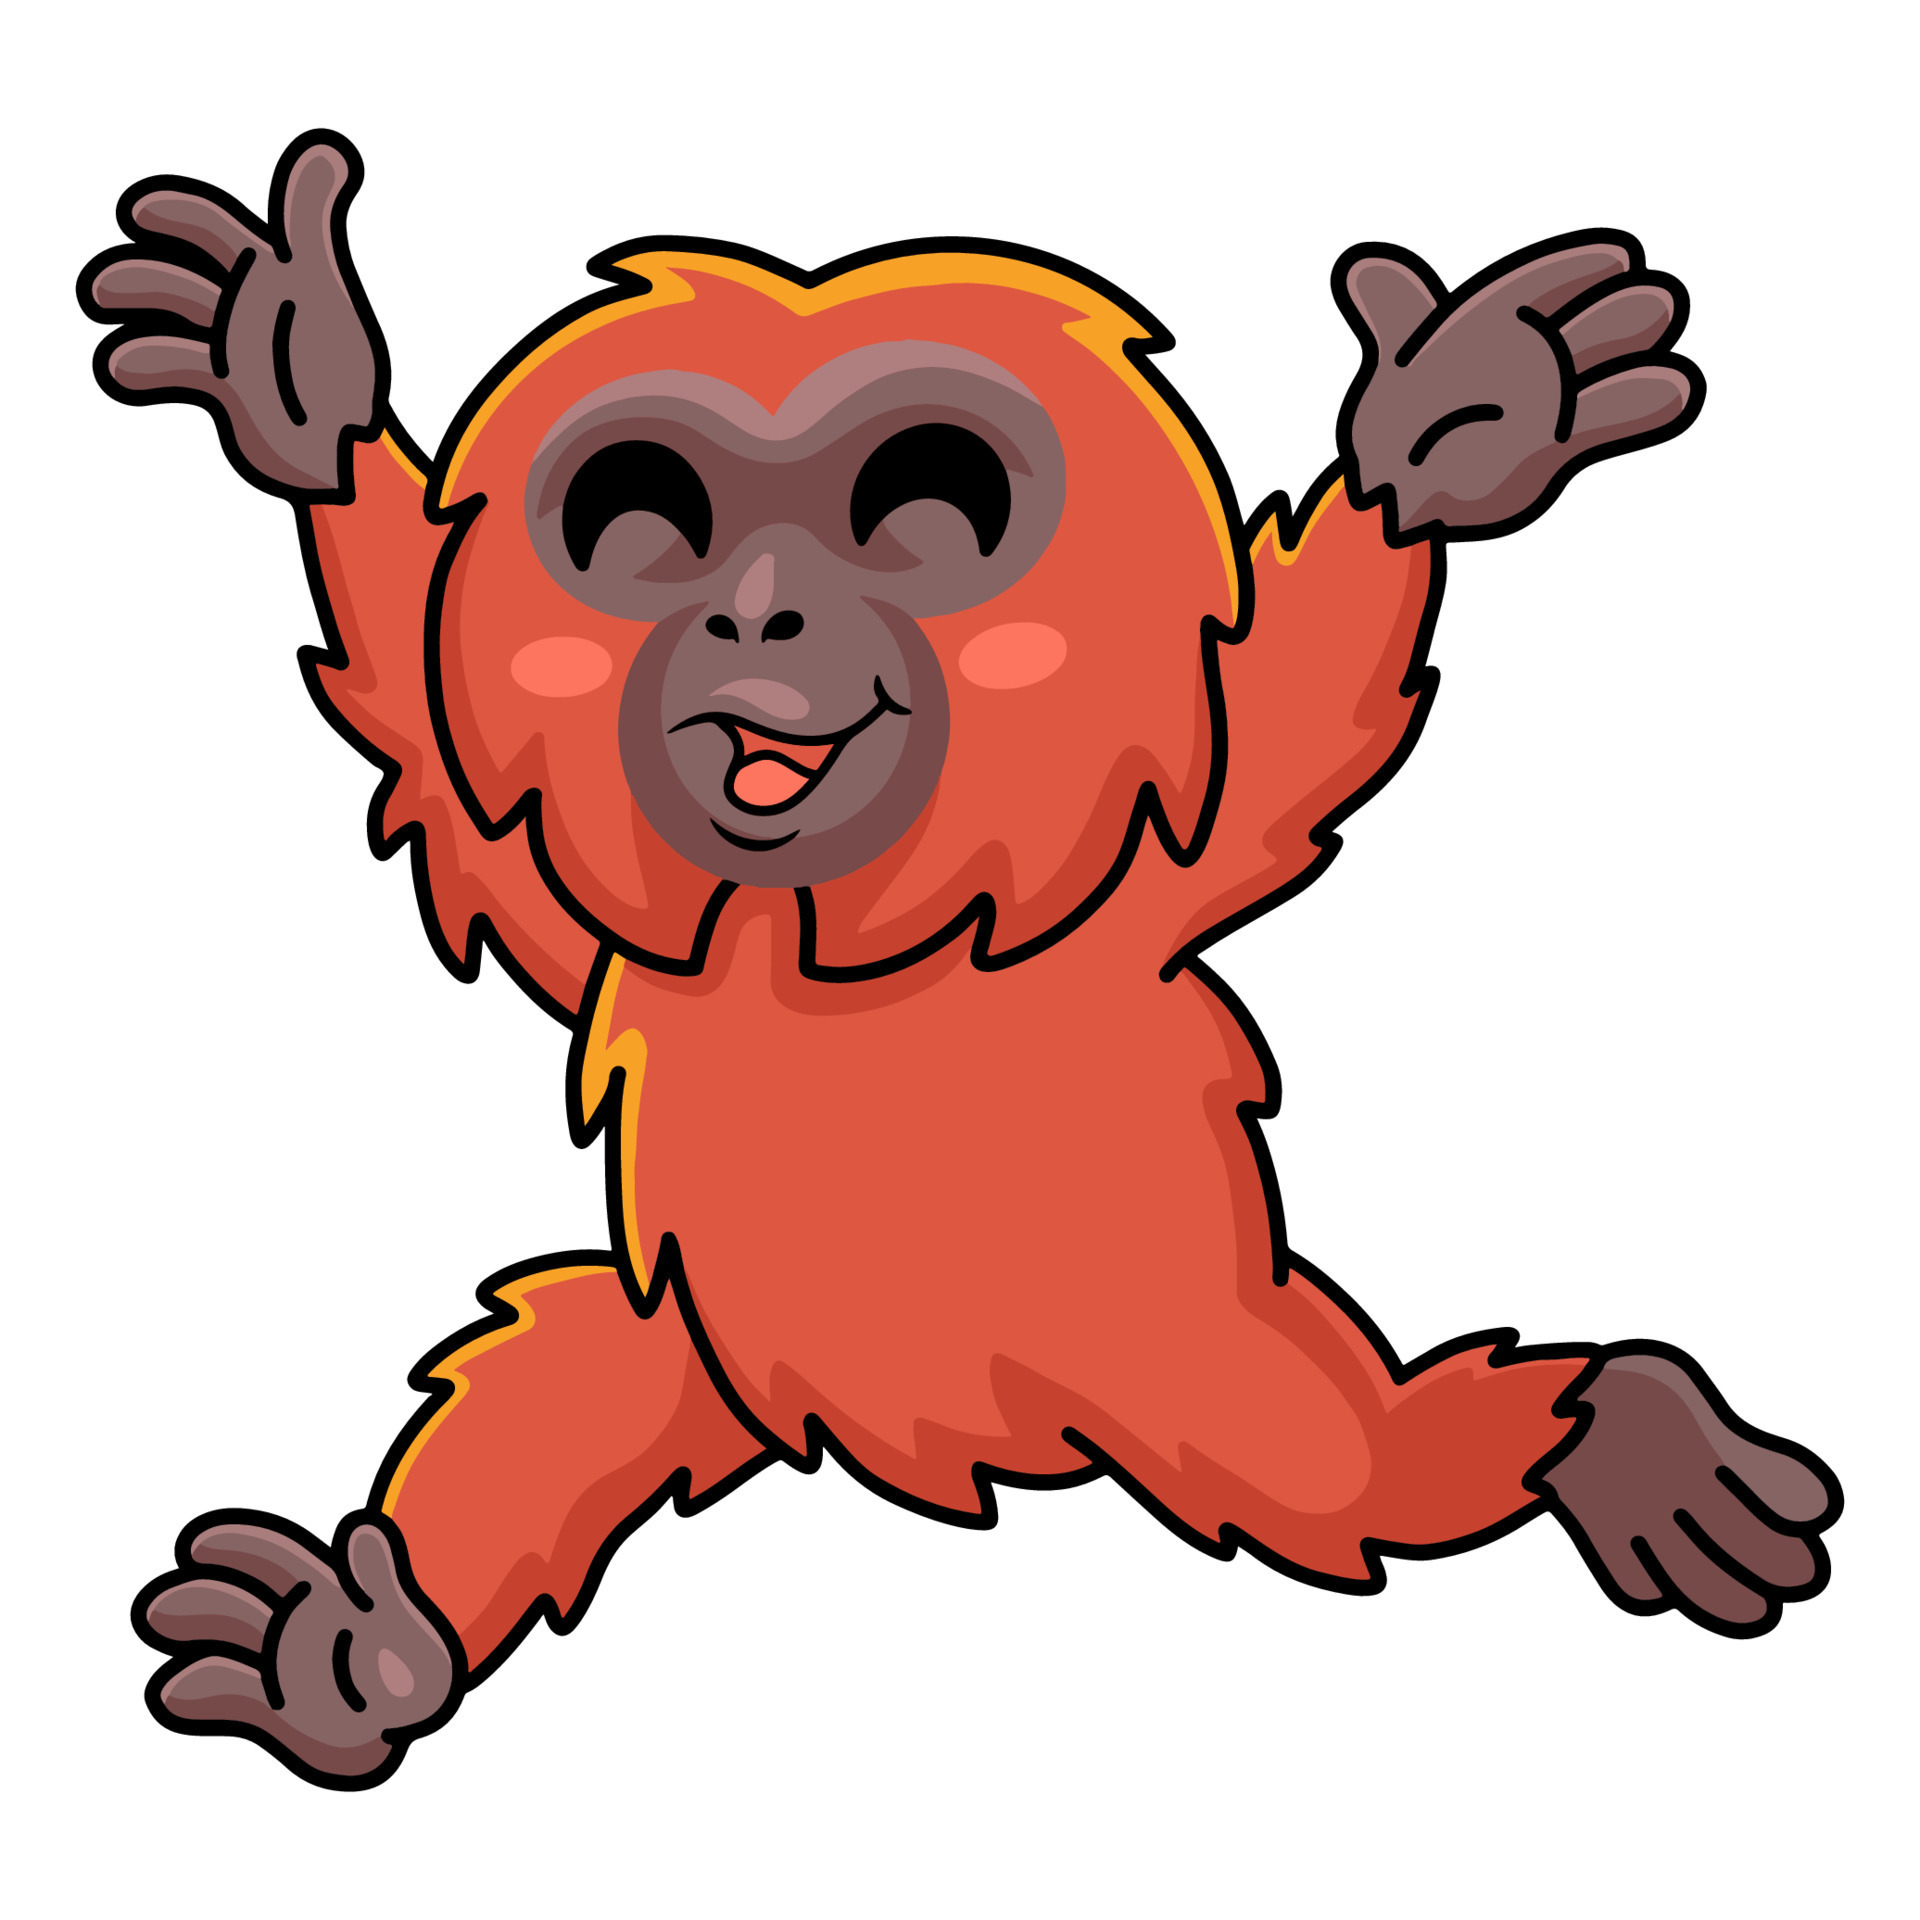 Cute little orangutan cartoon running 14802806 Vector Art at Vecteezy